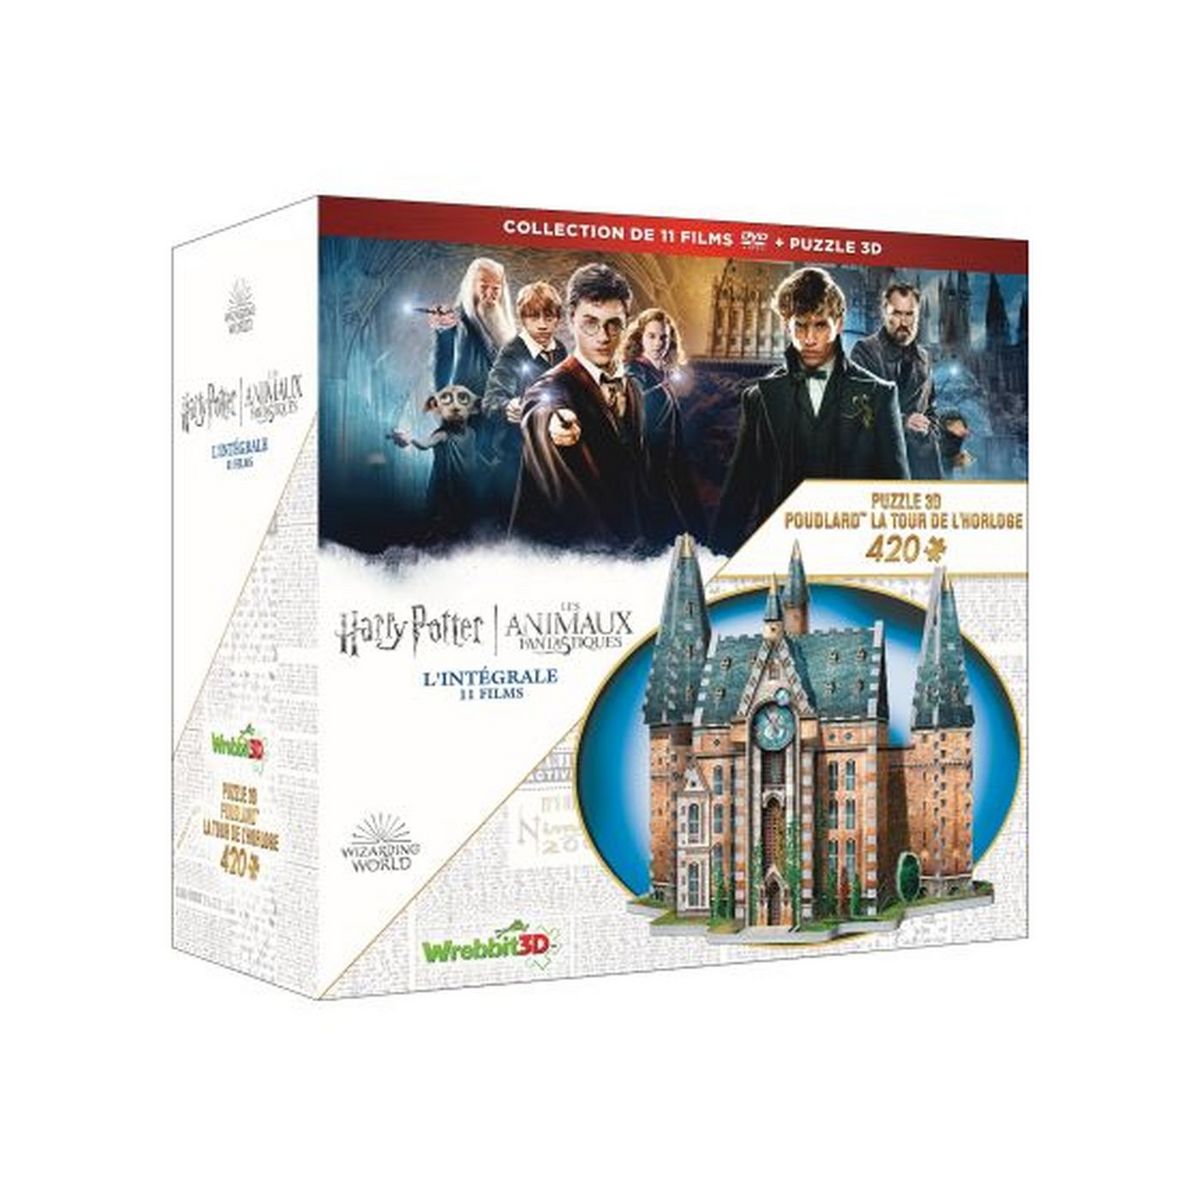 Wizarding World - Harry Potter / Les Animaux Fantastiques - l'intégrale coffret 11 films DVD